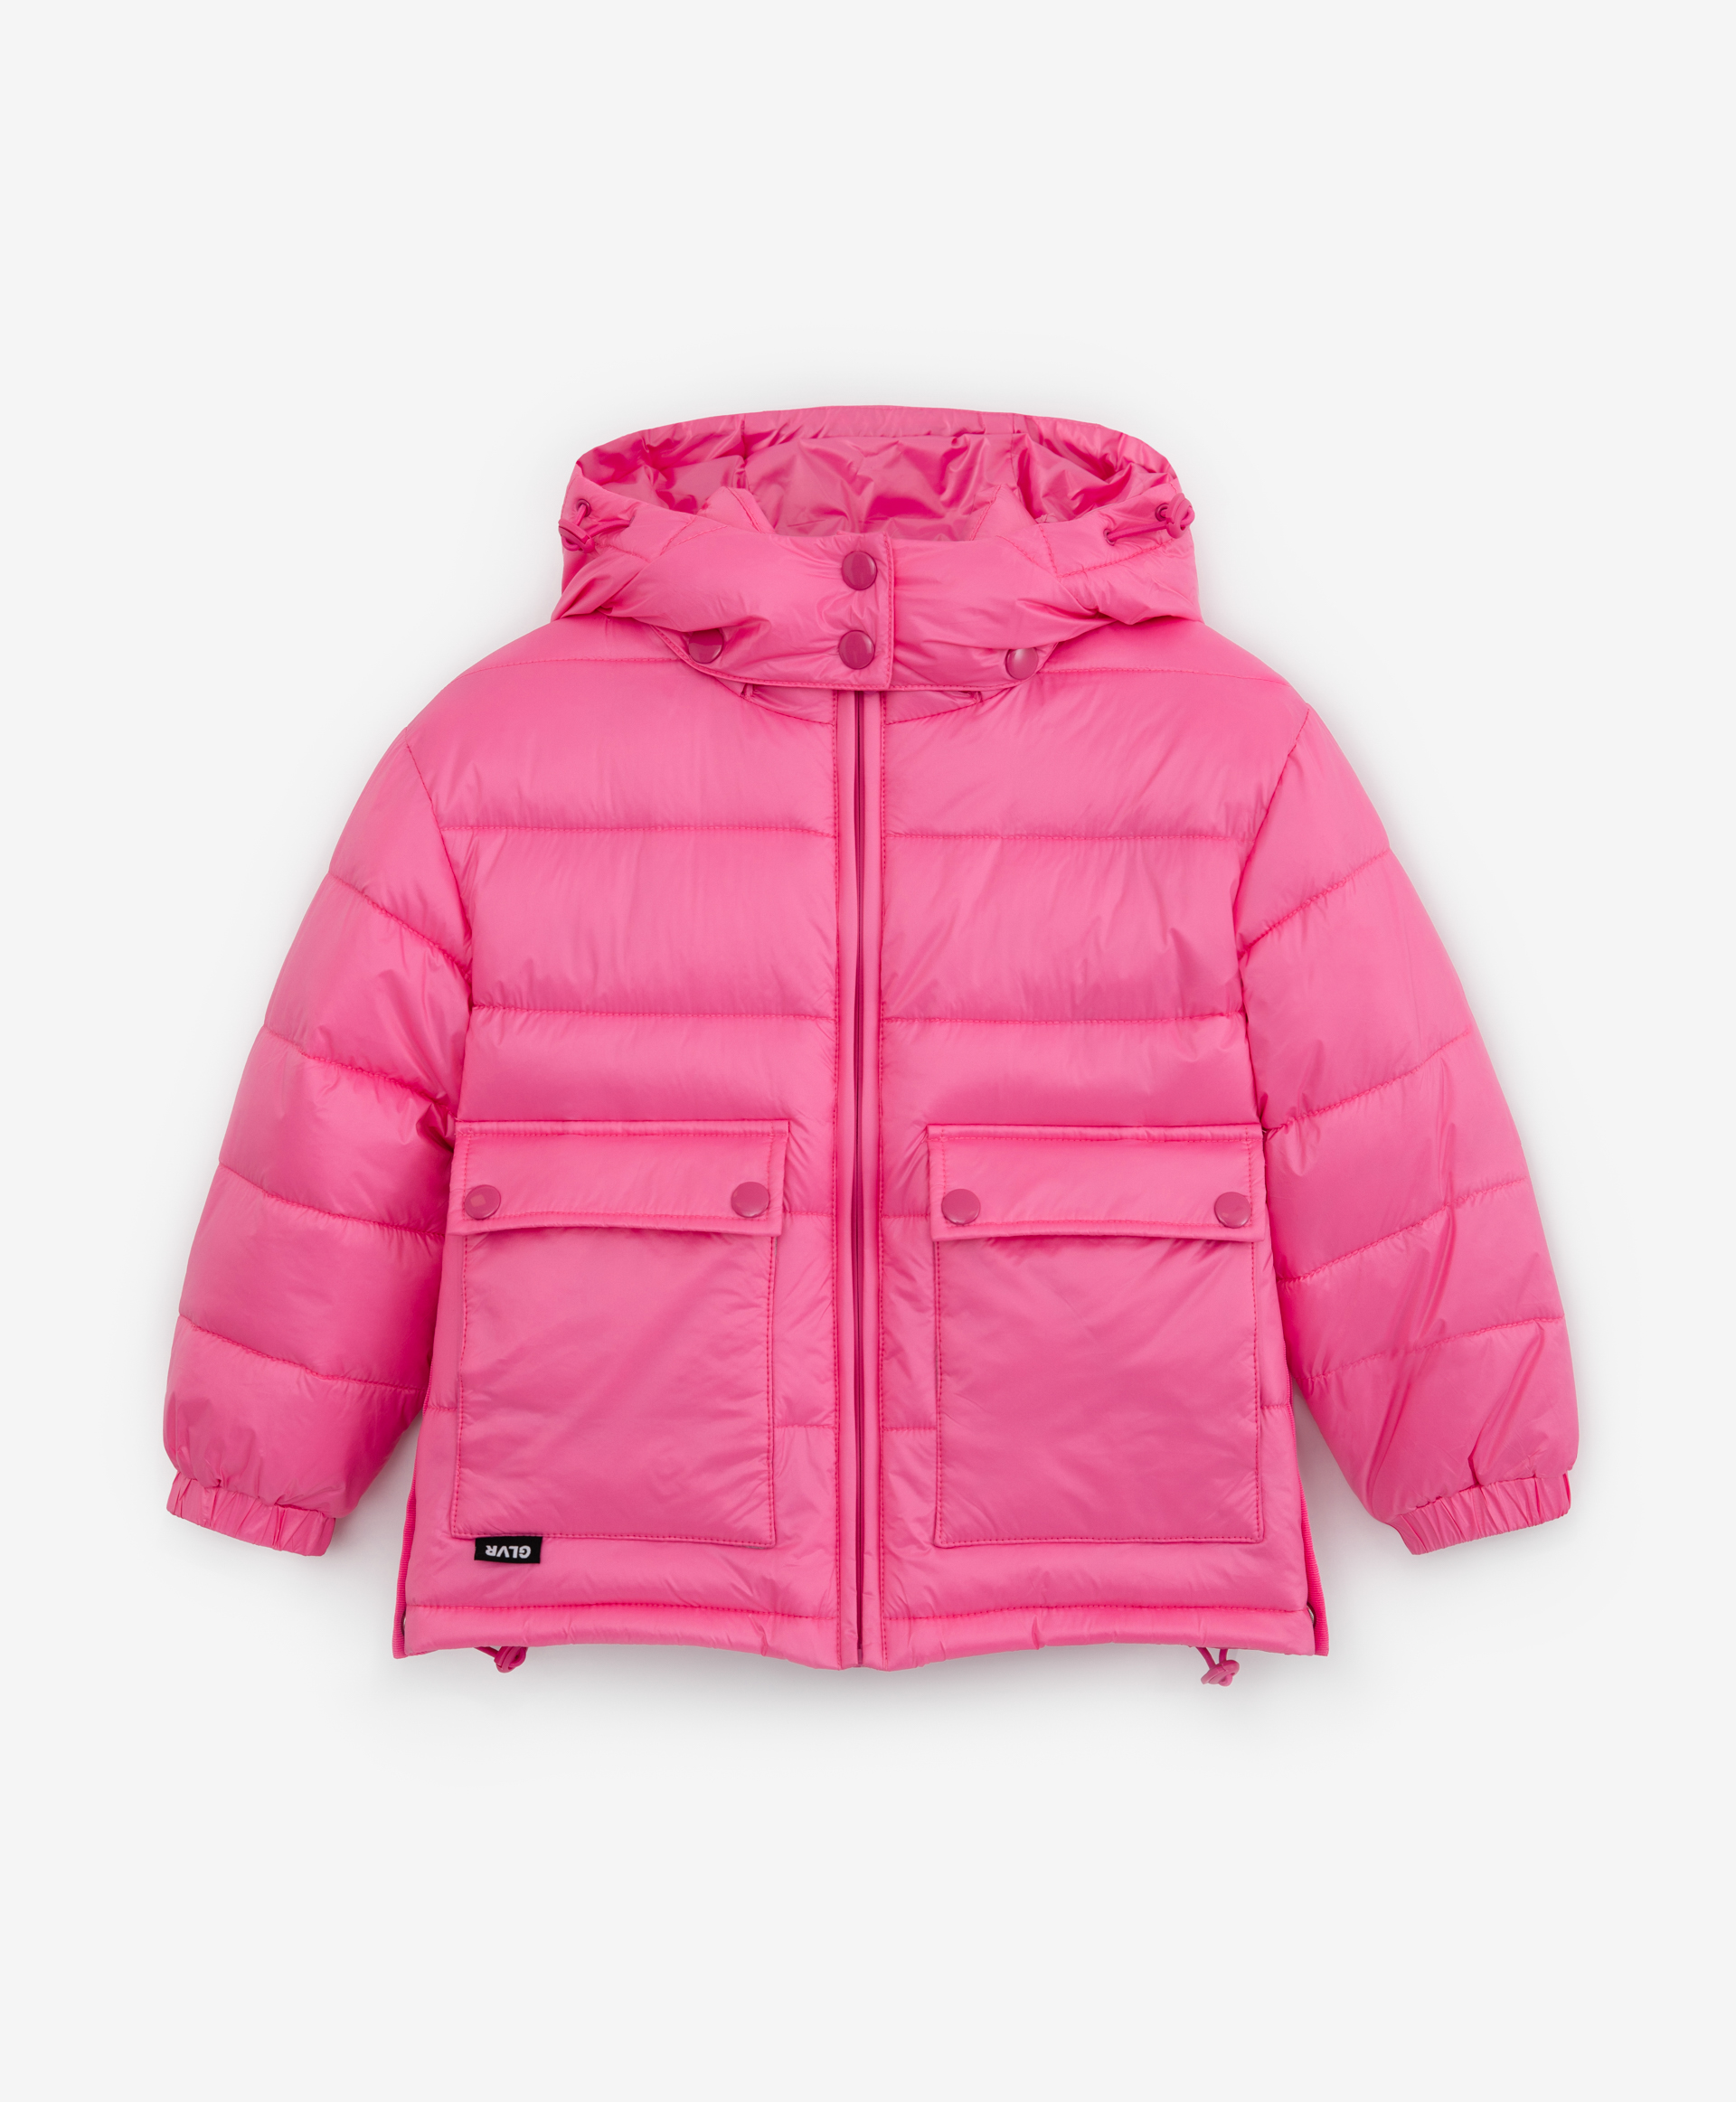 Купить Куртка детская Gulliver 12203GMC4103 цв. розовый р. 116,